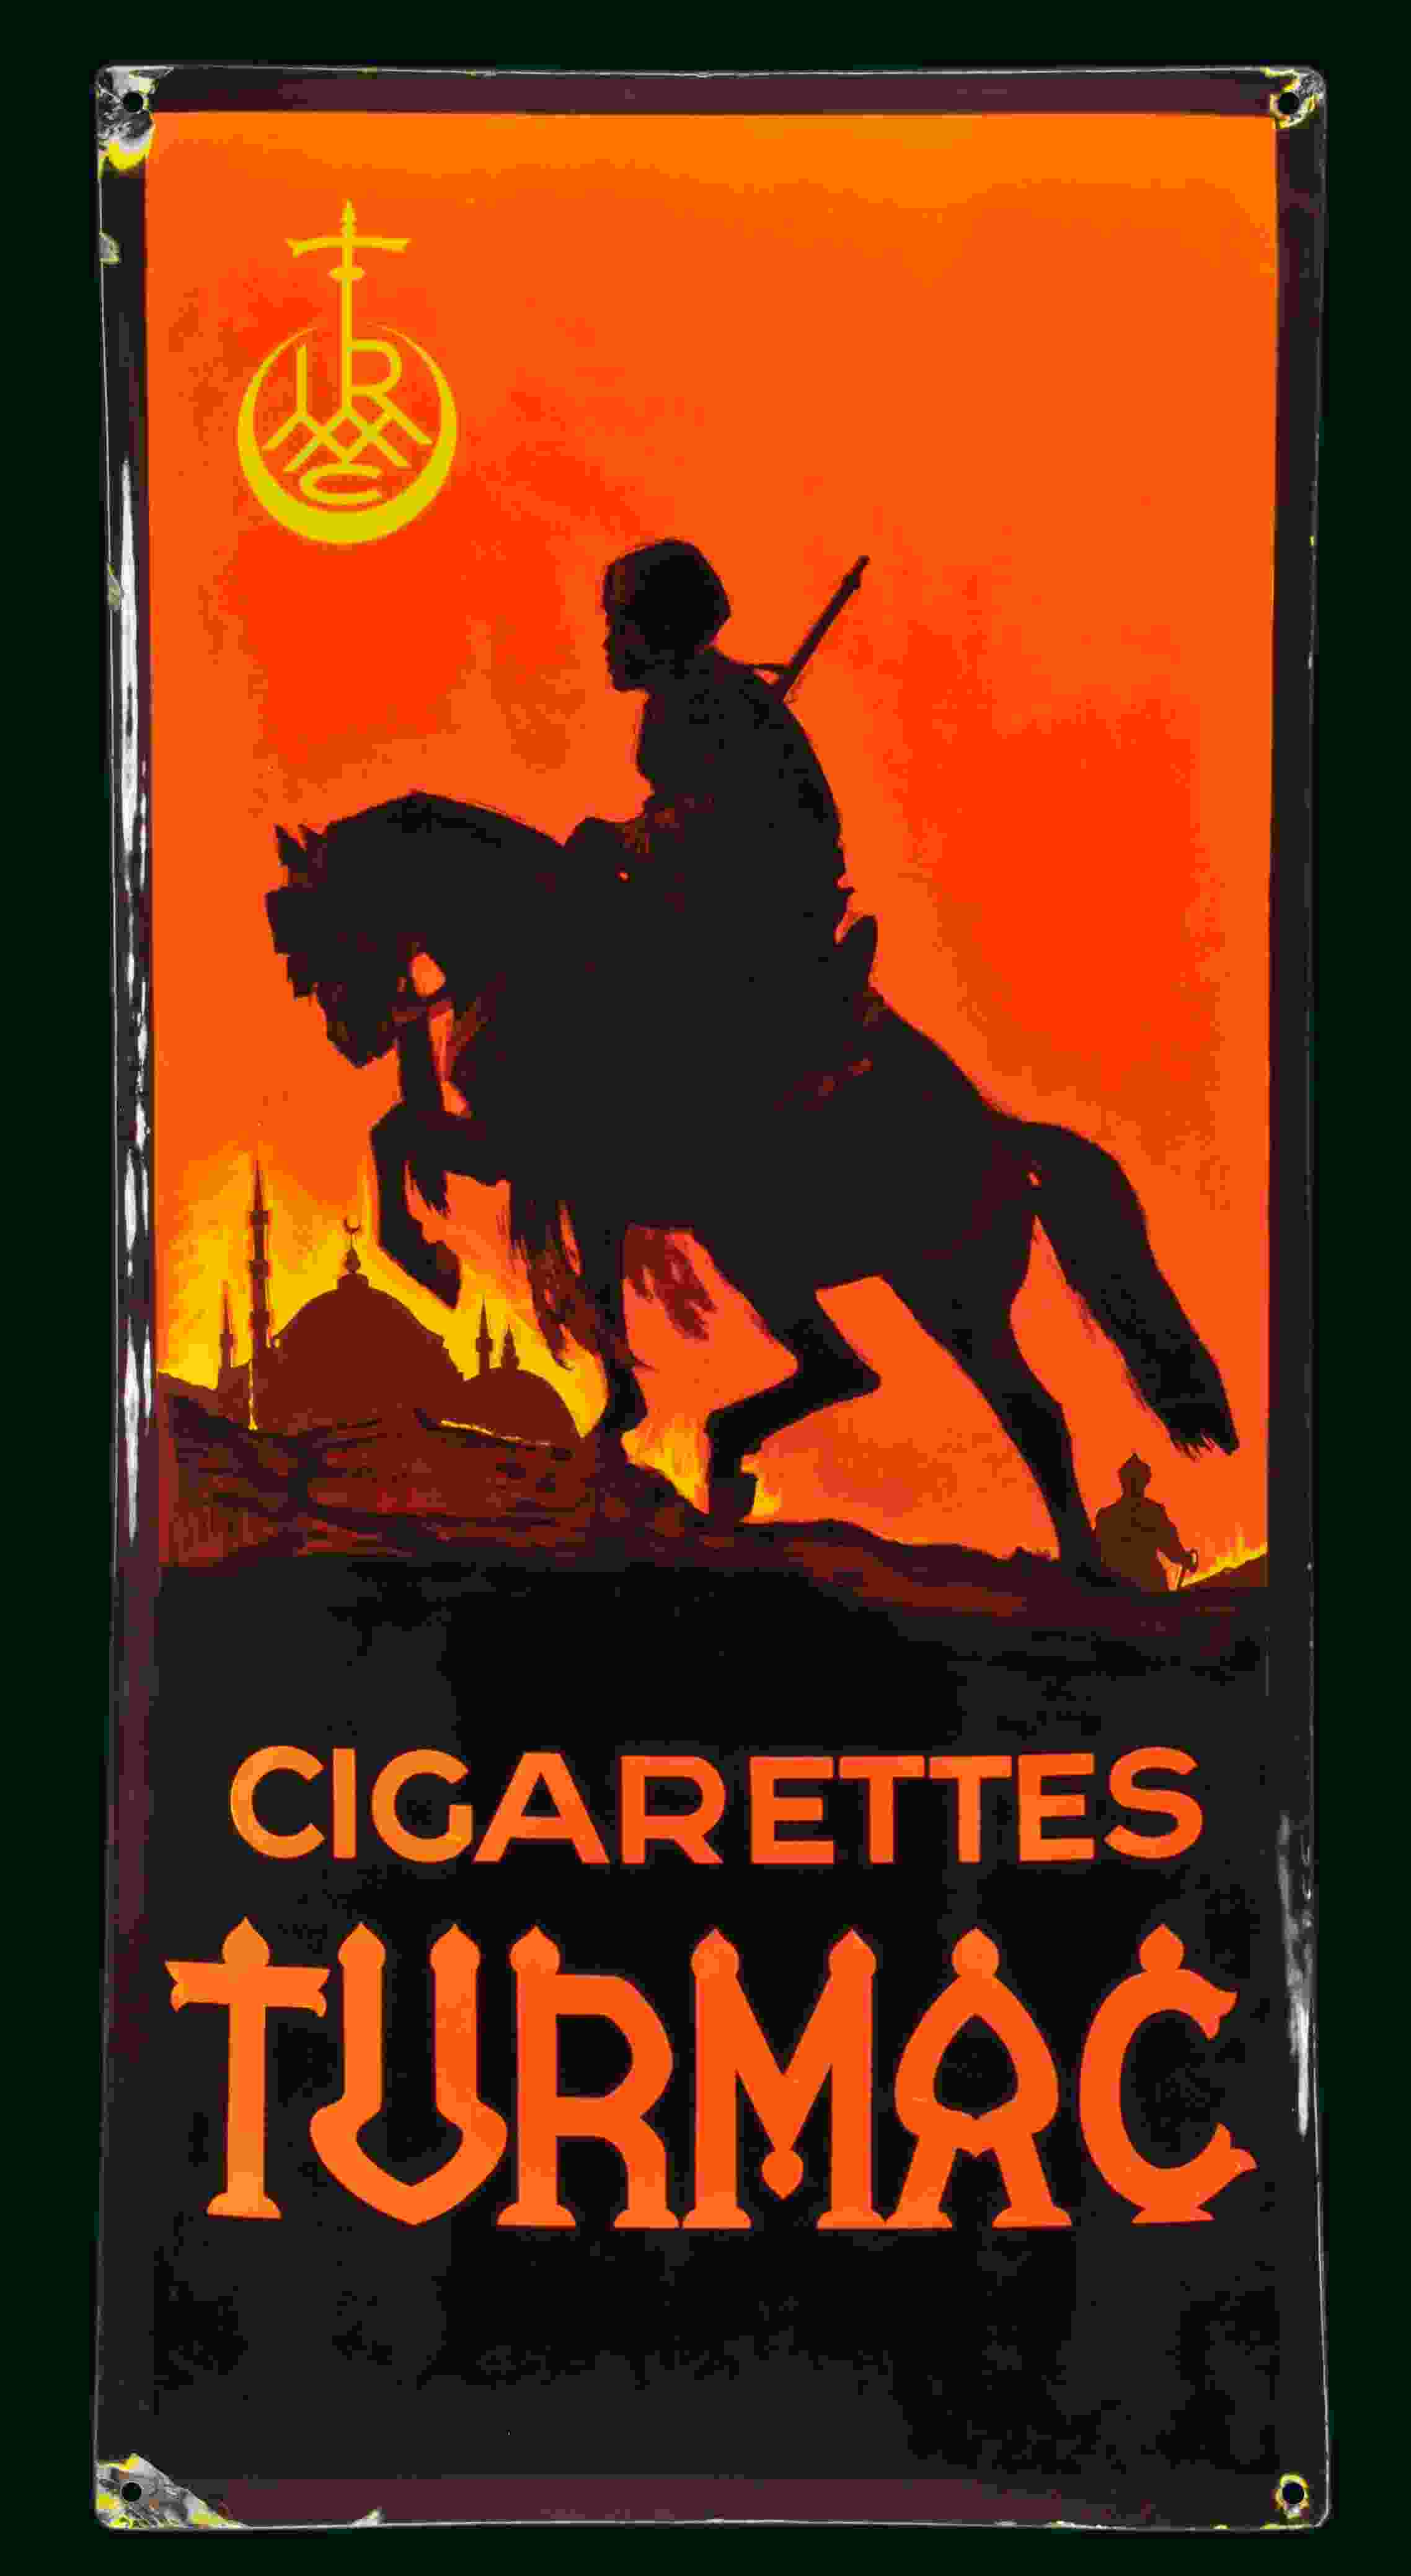 Turmac Cigarettes 